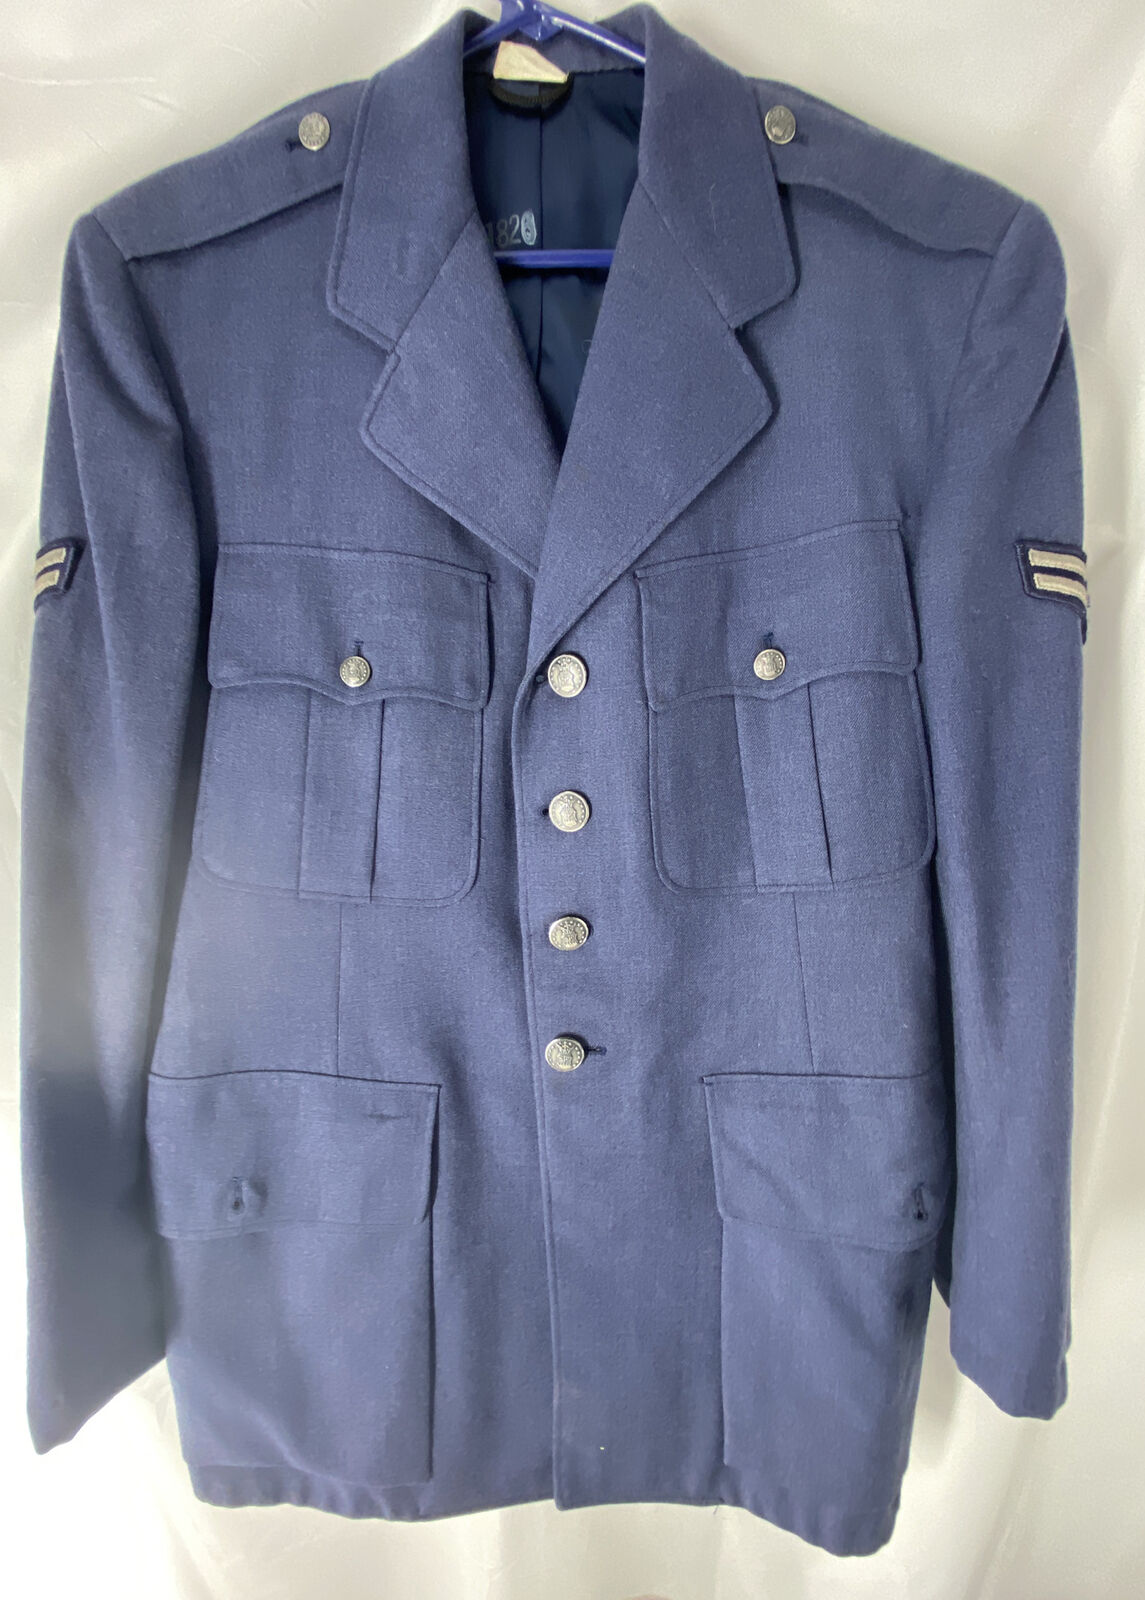 Vintage USAF US Air Force Blue Comp Uniform Jacket 40R Excellent Condition